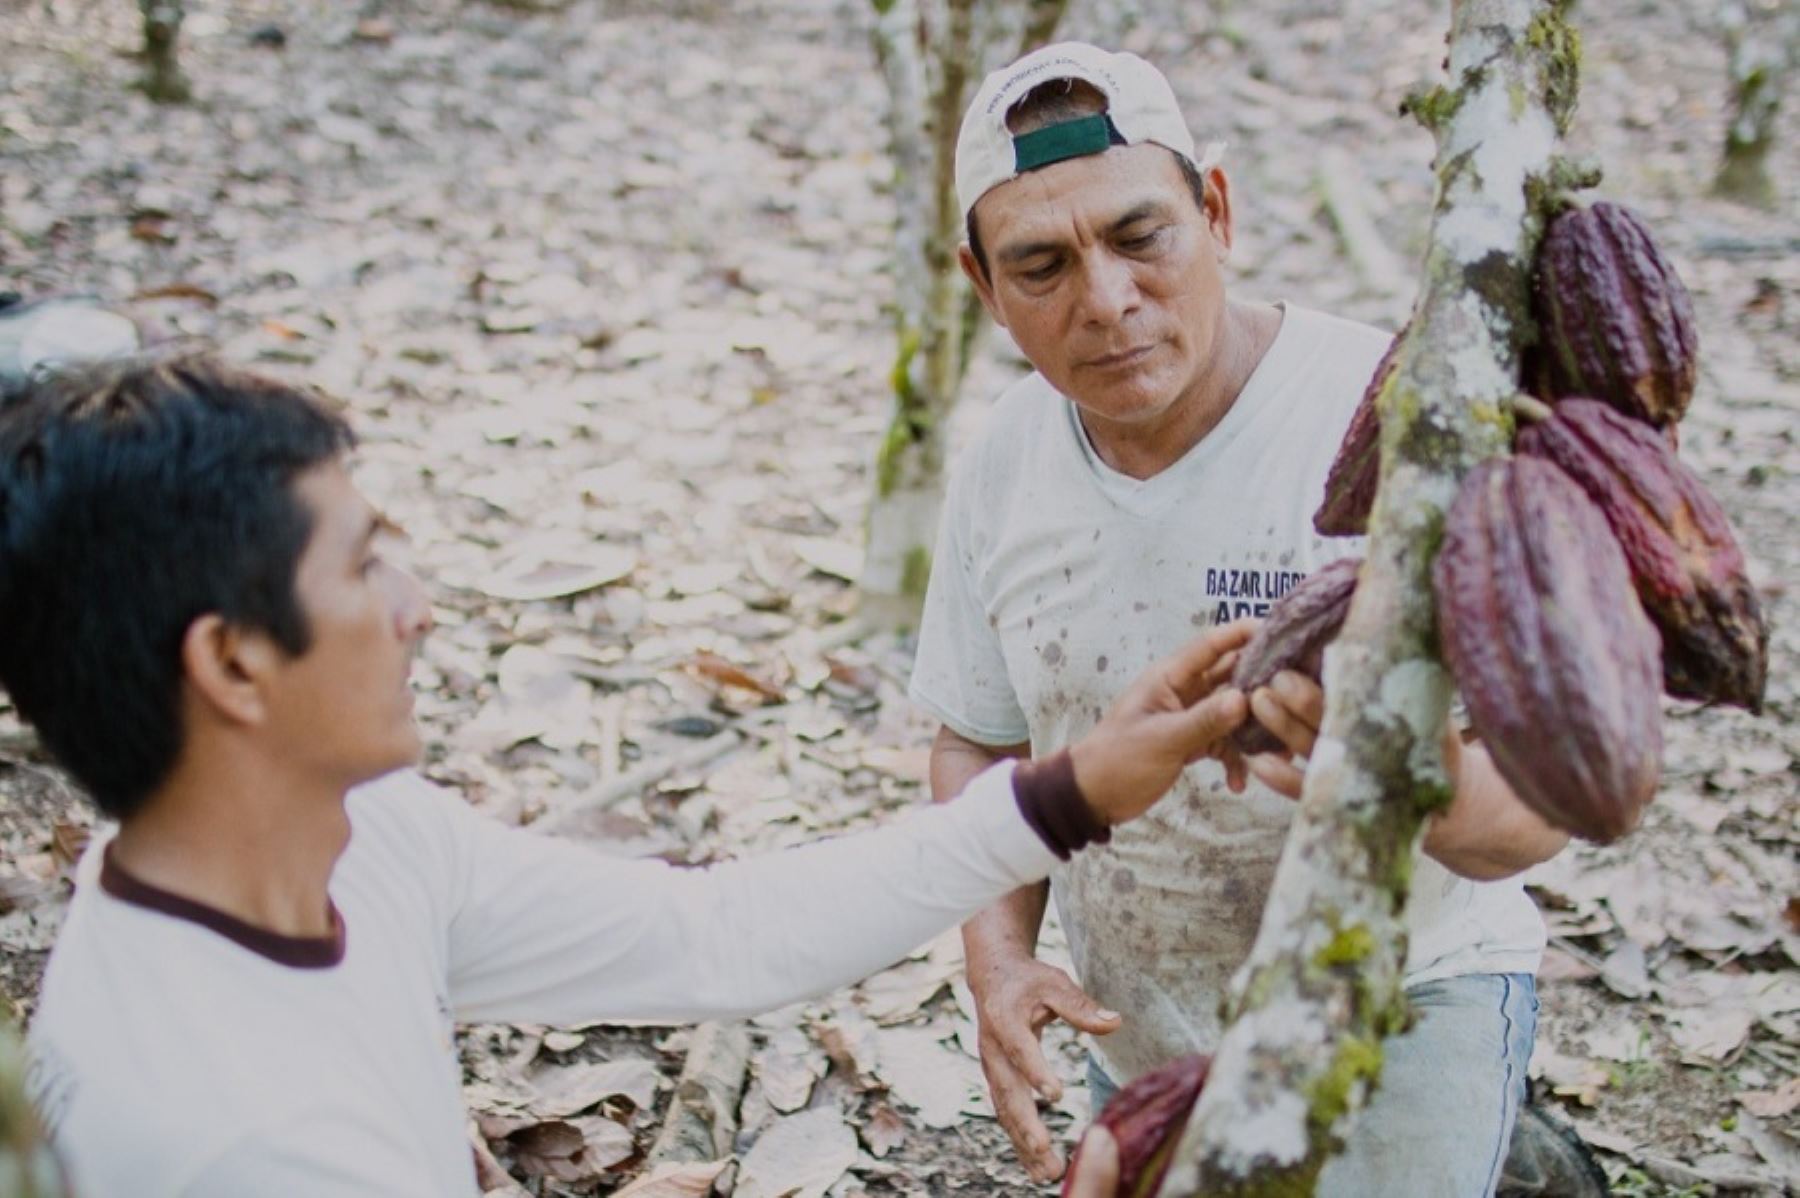 La Alianza Cacao Perú, una actividad público-privada, que nació en el 2012 con el apoyo de Usaid, culminó su implementación después de 10 años de trabajo, logrando construir una cadena de valor del cacao-chocolate, que benefició a miles de familias pequeñas productoras de las regiones de San Martín, Huánuco, Ucayali y Pasco.